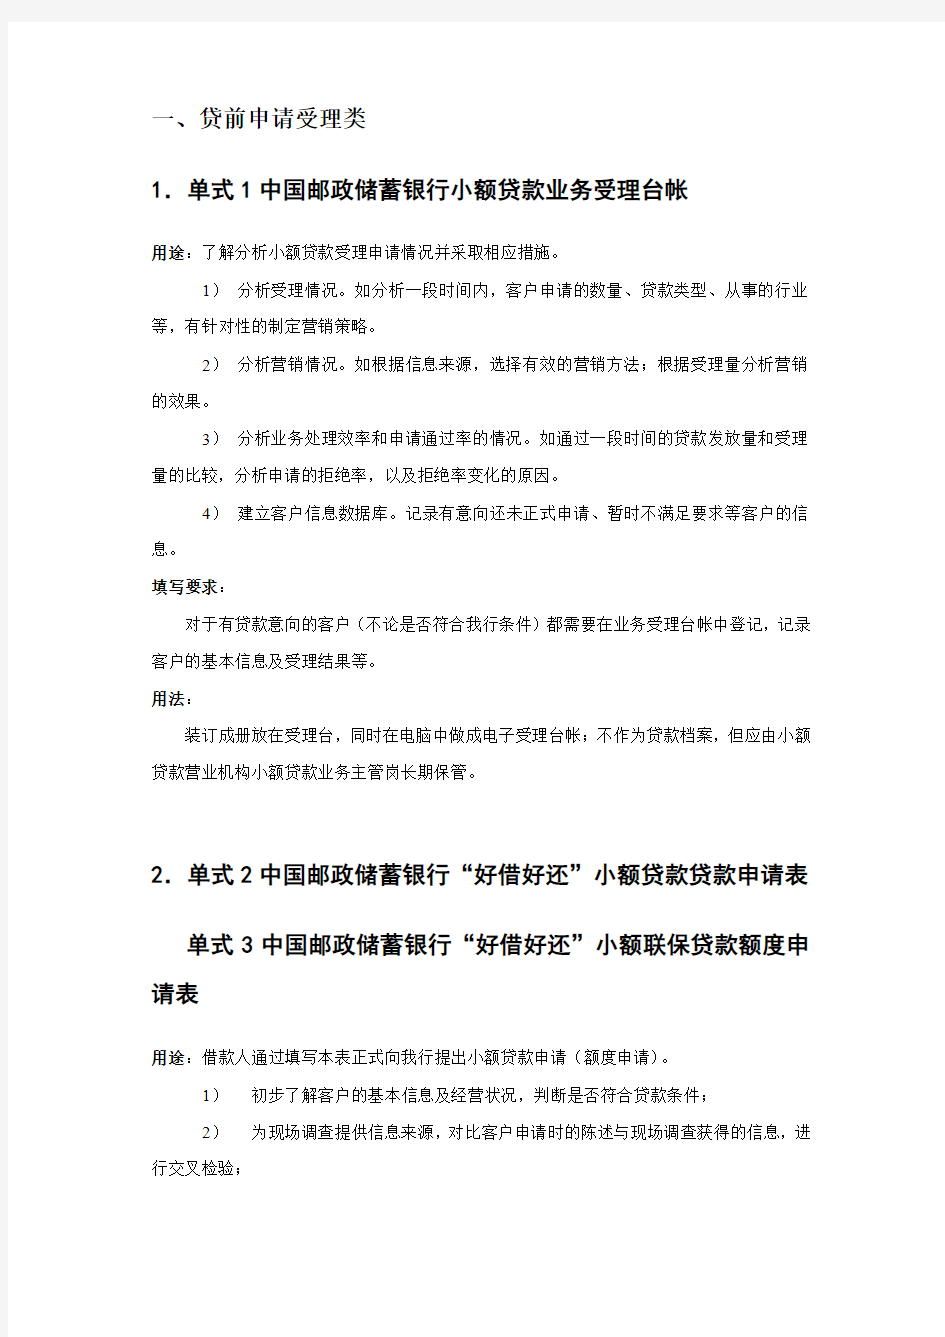 中国邮政储蓄银行小额贷款业务单式填写规范